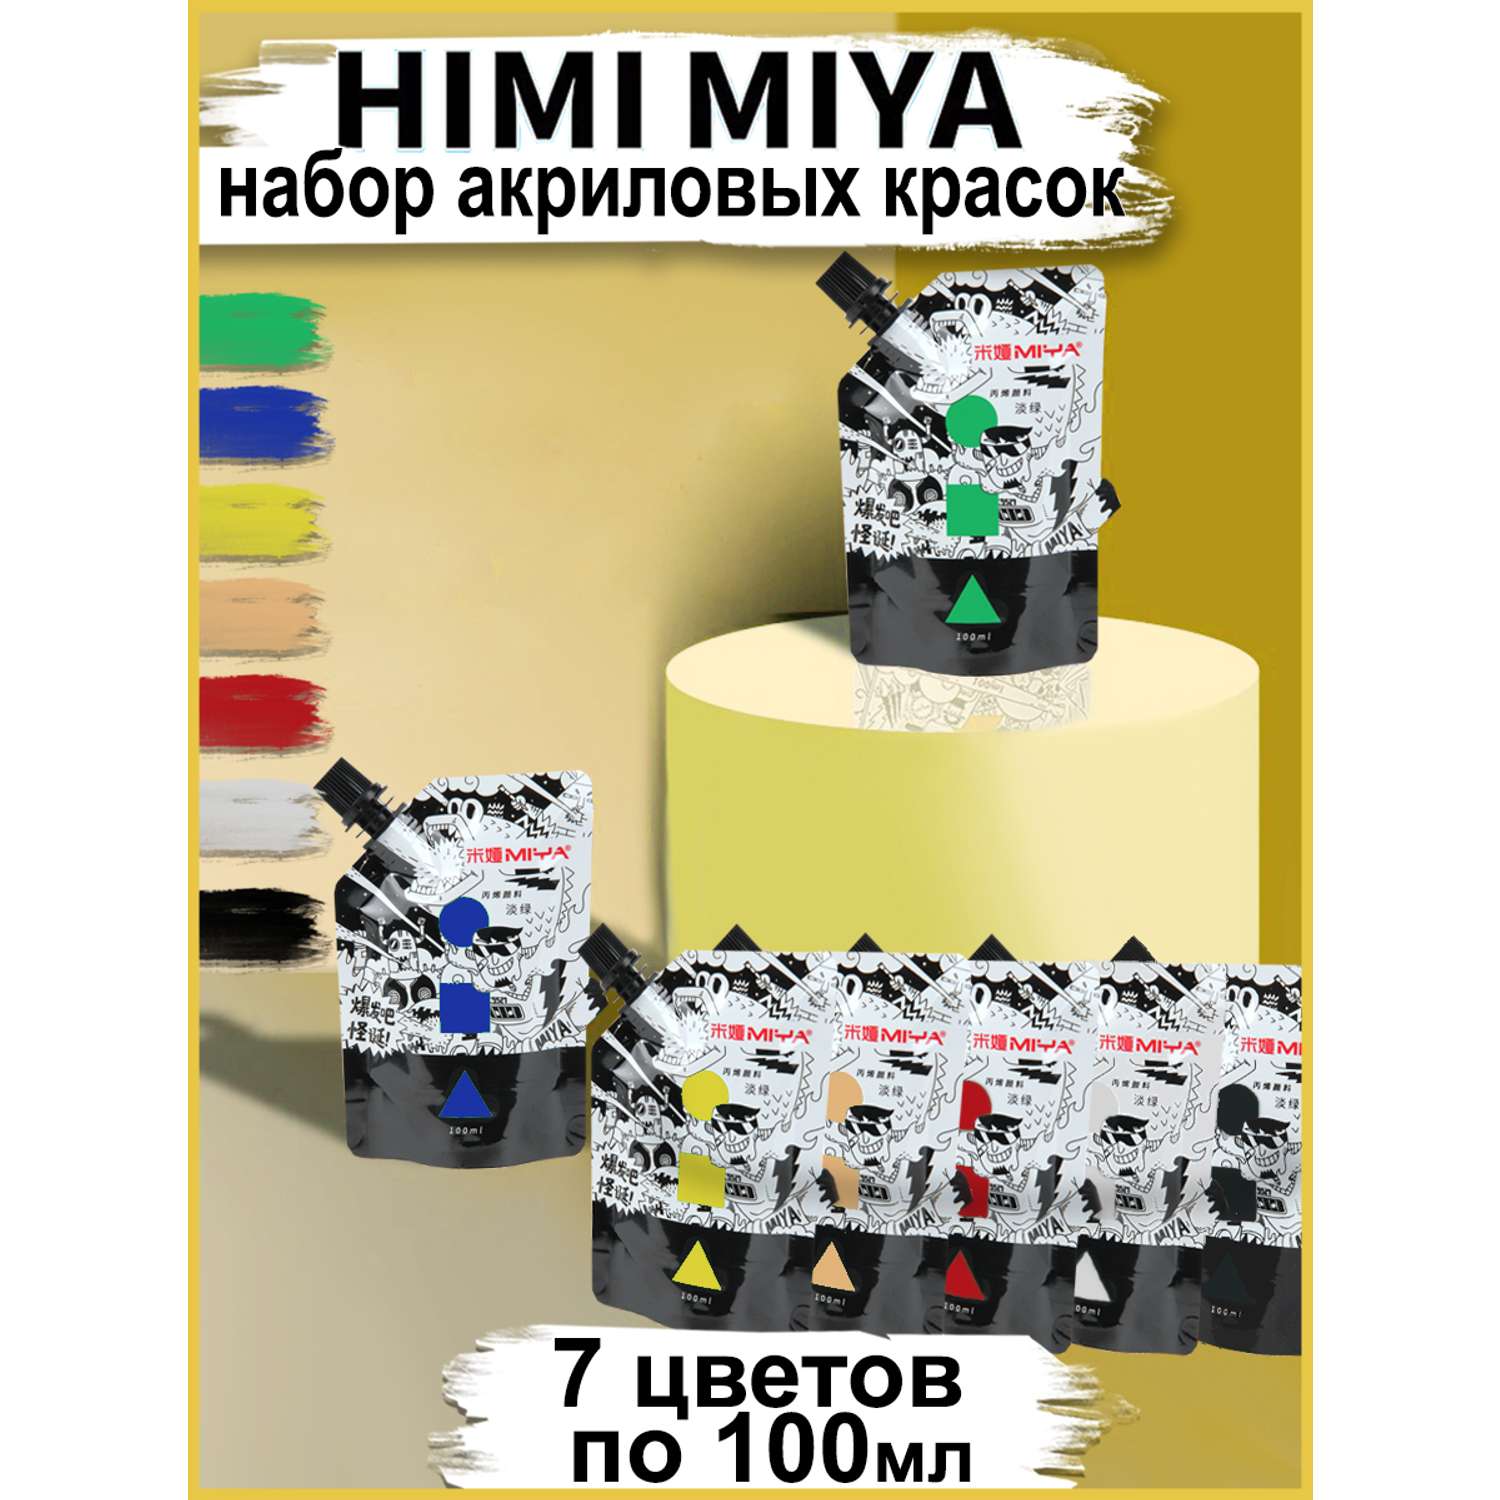 Набор акриловых красок HIMI MIYA в тюбиках 100 мл 7 цветов - фото 2